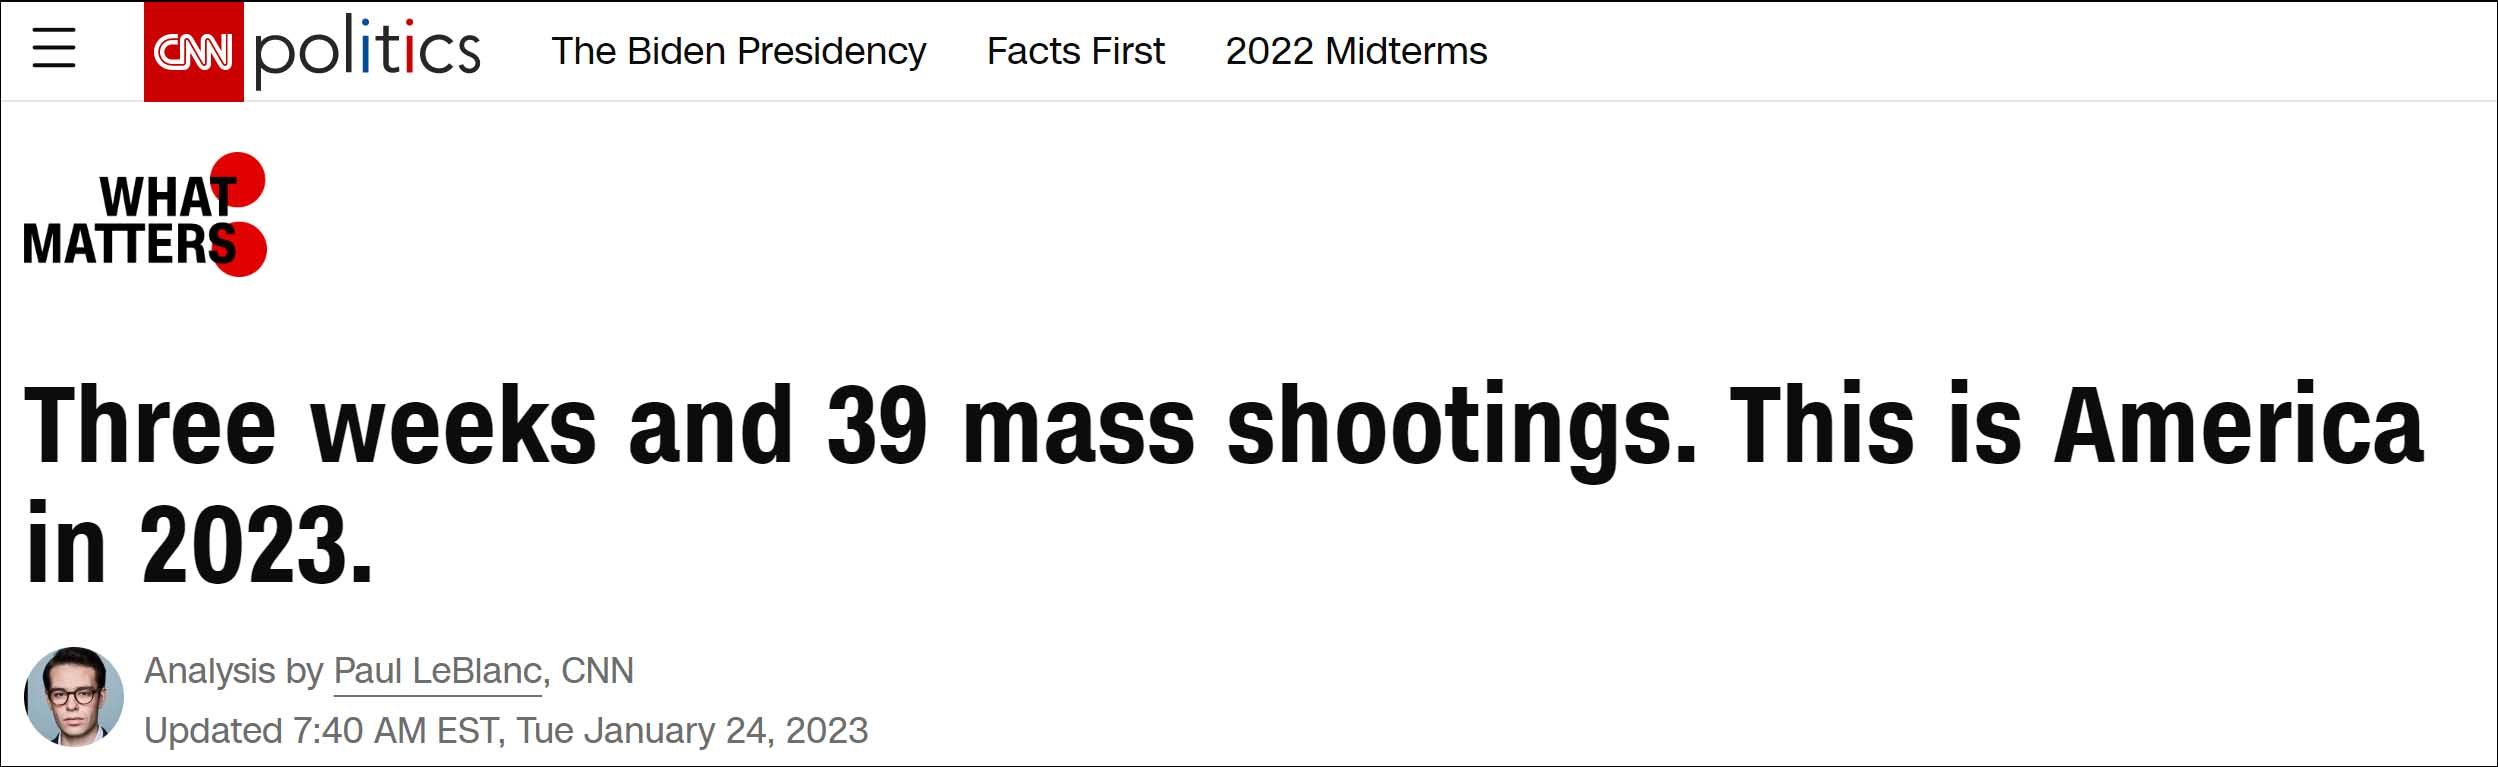 美国自2023年以来已发生39起大规模枪击事件